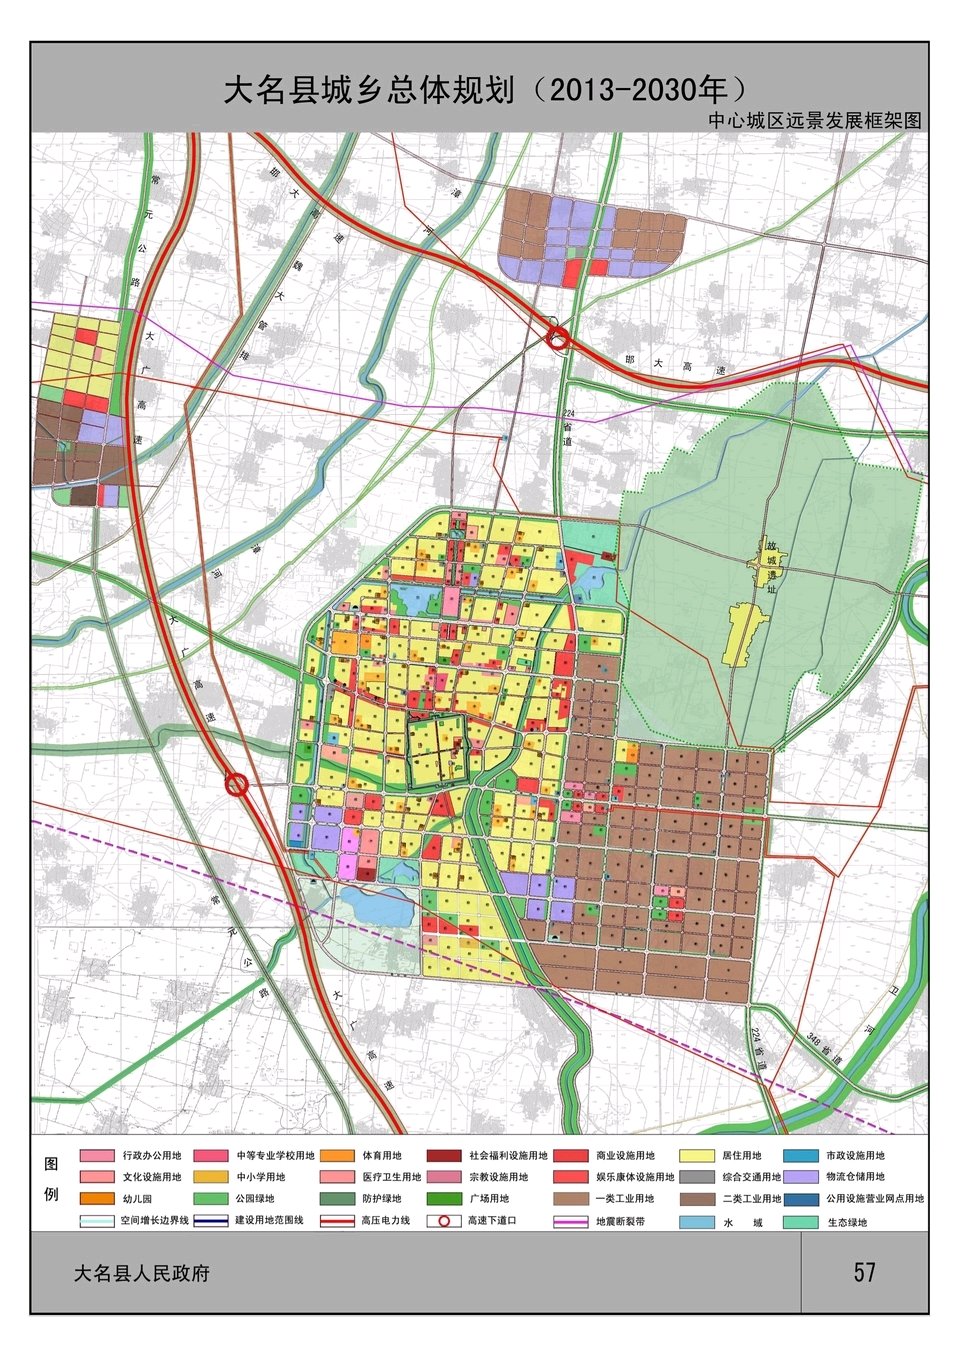 在网上看到了大名县城乡总体规划(2013年-2030年)图中中心城区远景